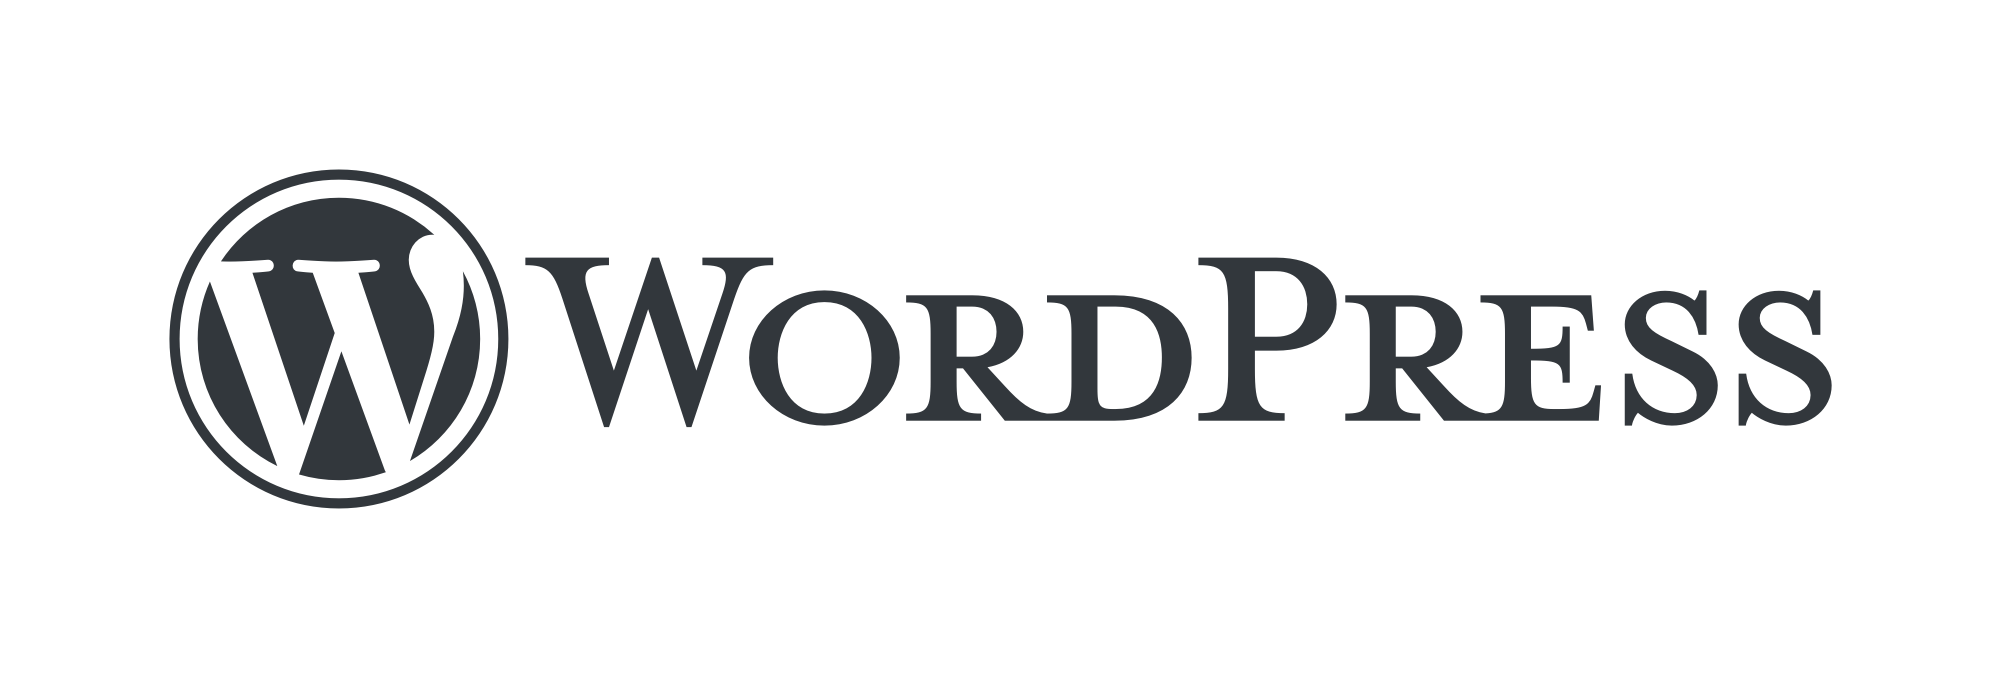 WordPress公式ロゴ